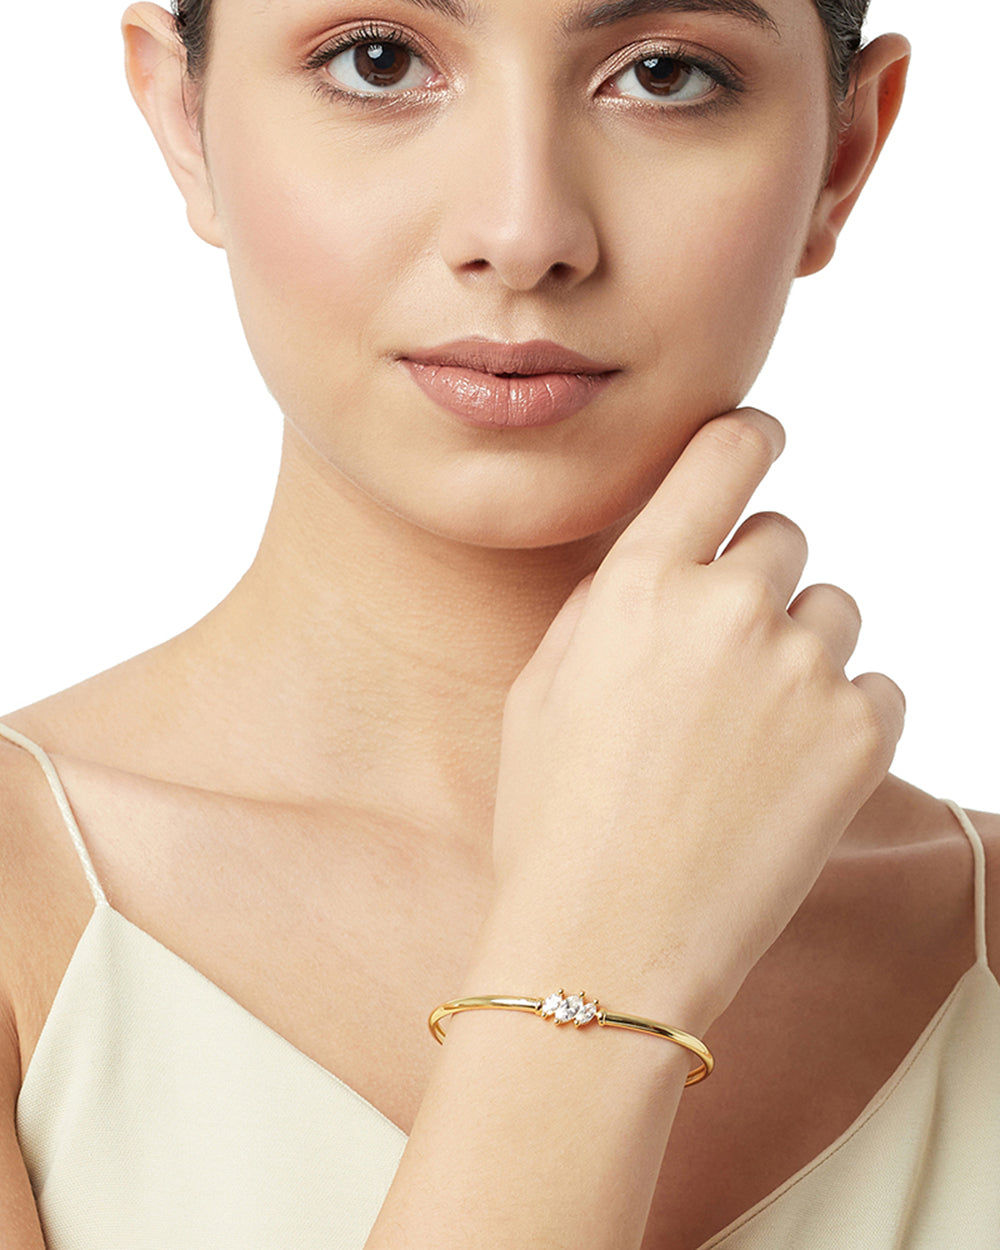 Women's Subtle And Elegant Bracelet With Prong Setting Stones - Voylla